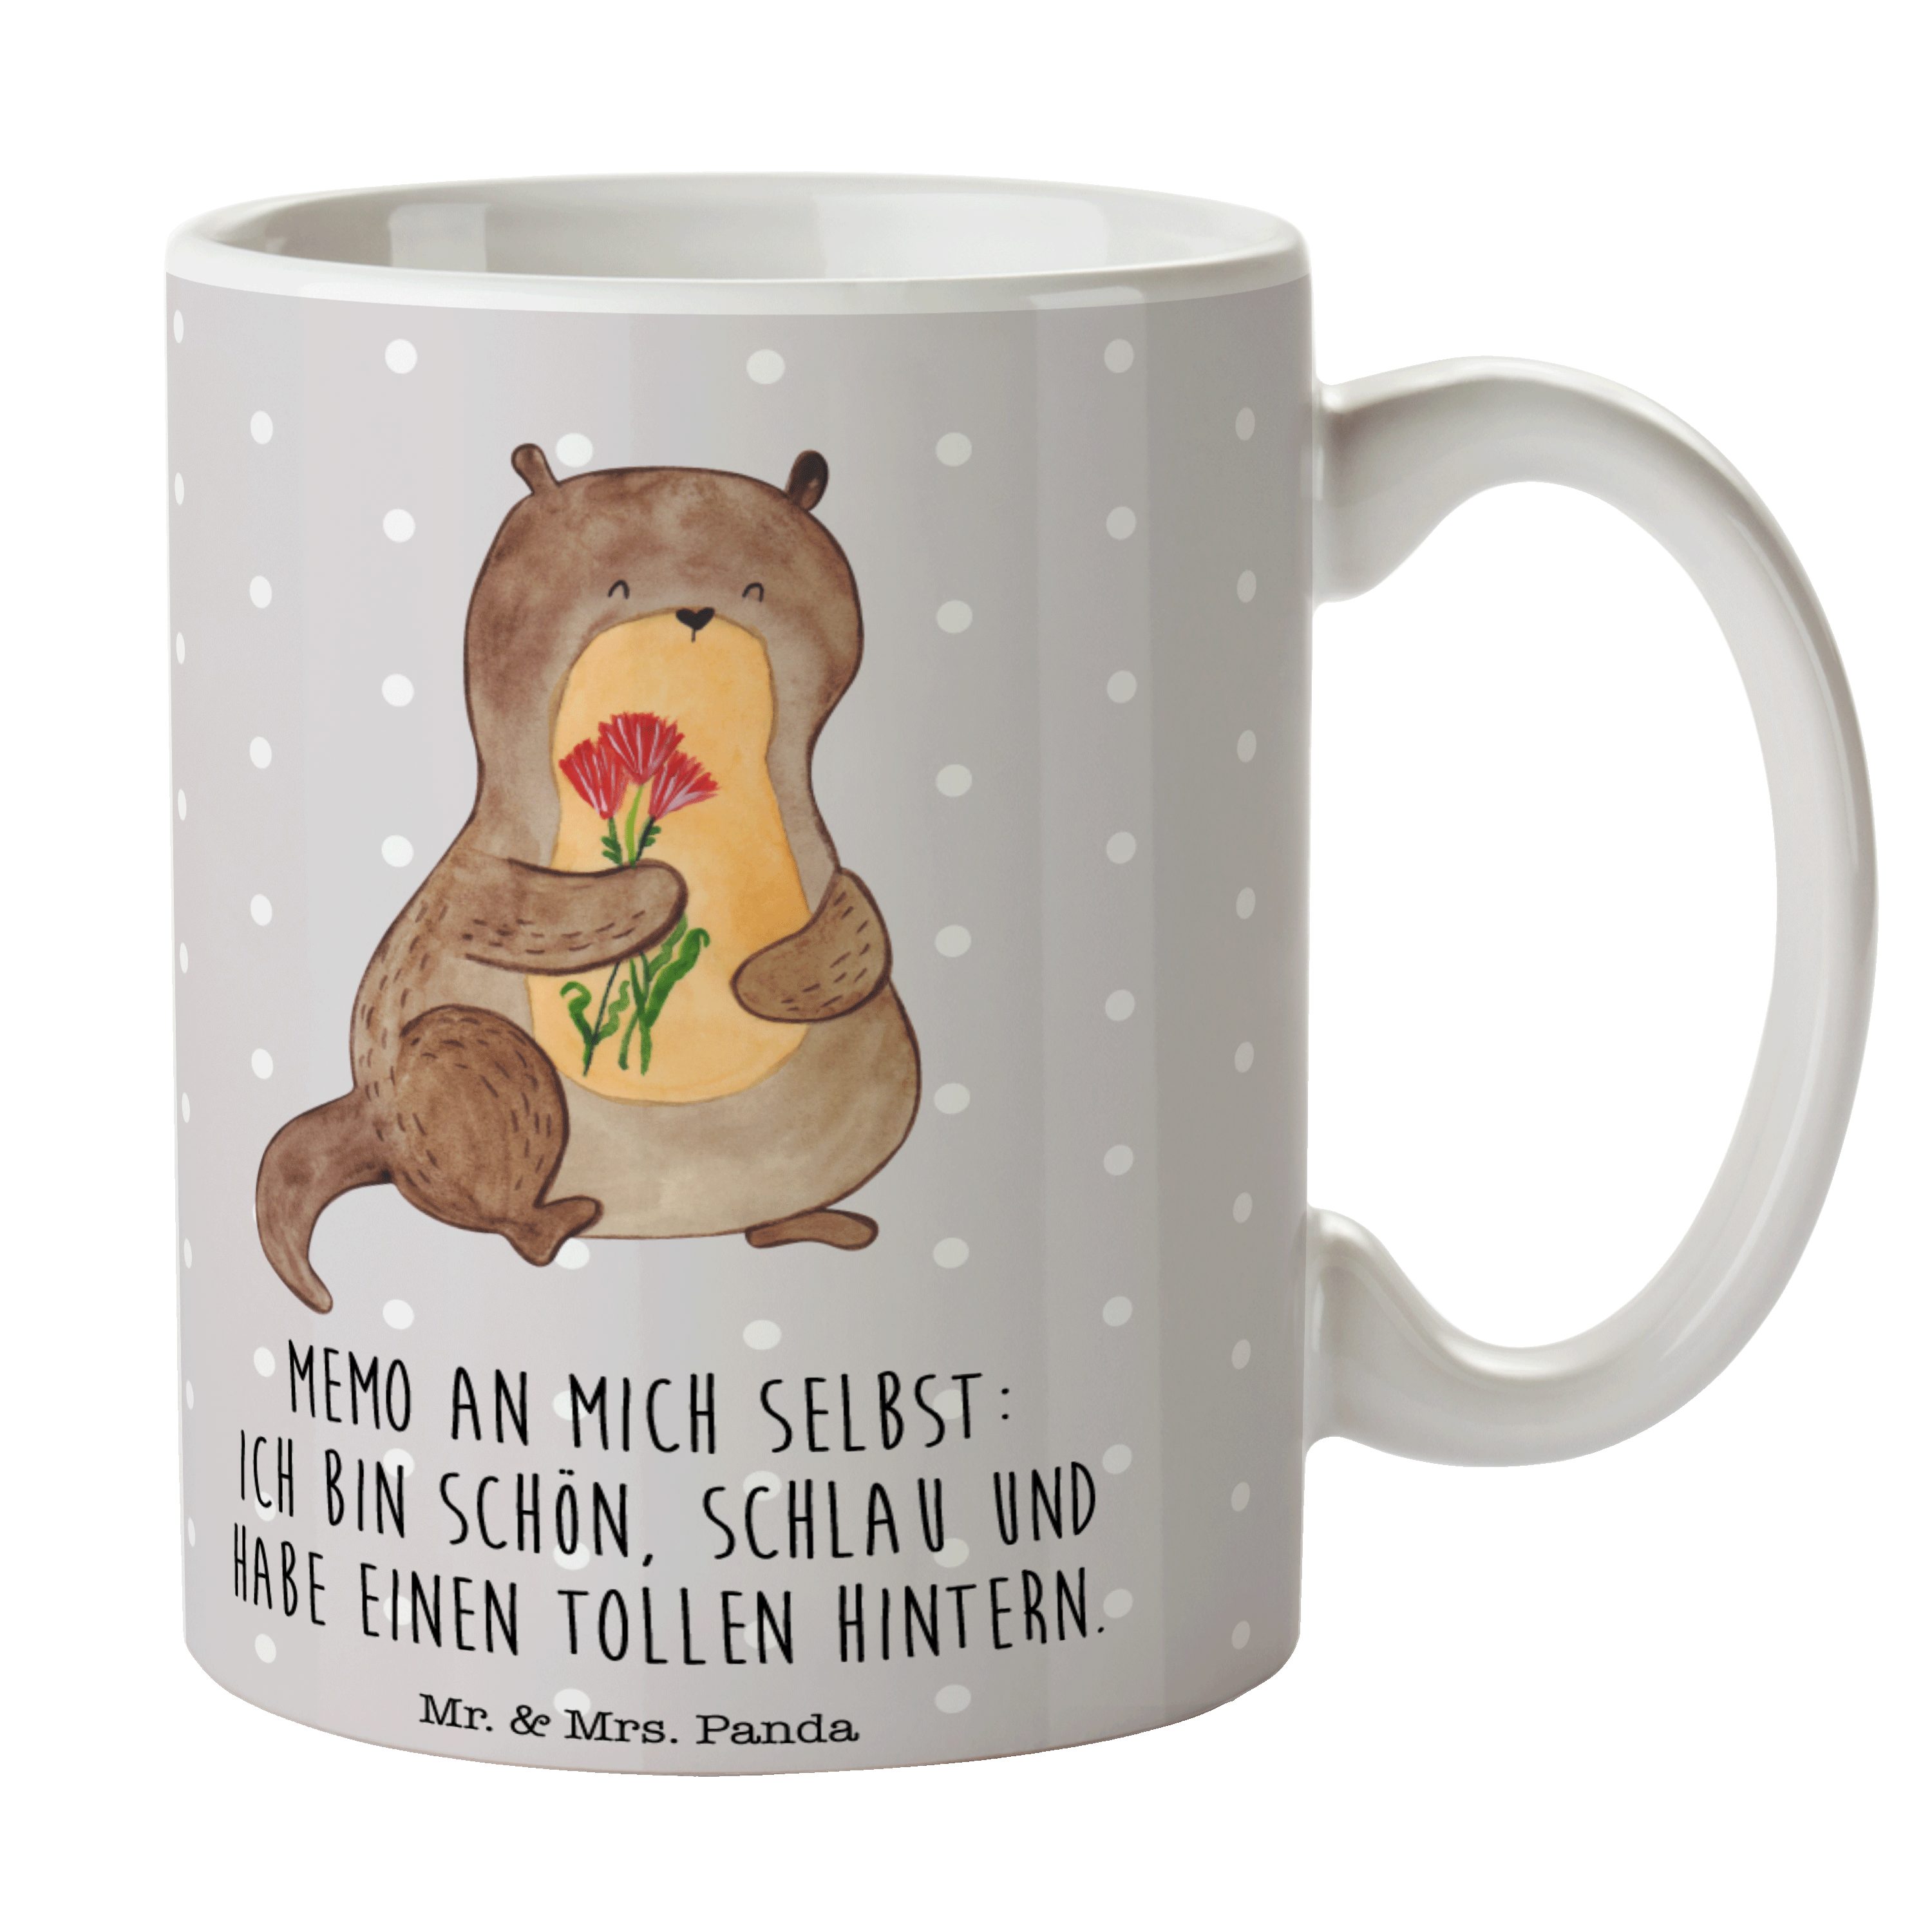 Mr. & Mrs. Panda Tasse Otter Blumenstrauß - Grau Pastell - Geschenk, niedlich, Otter Seeotte, Keramik